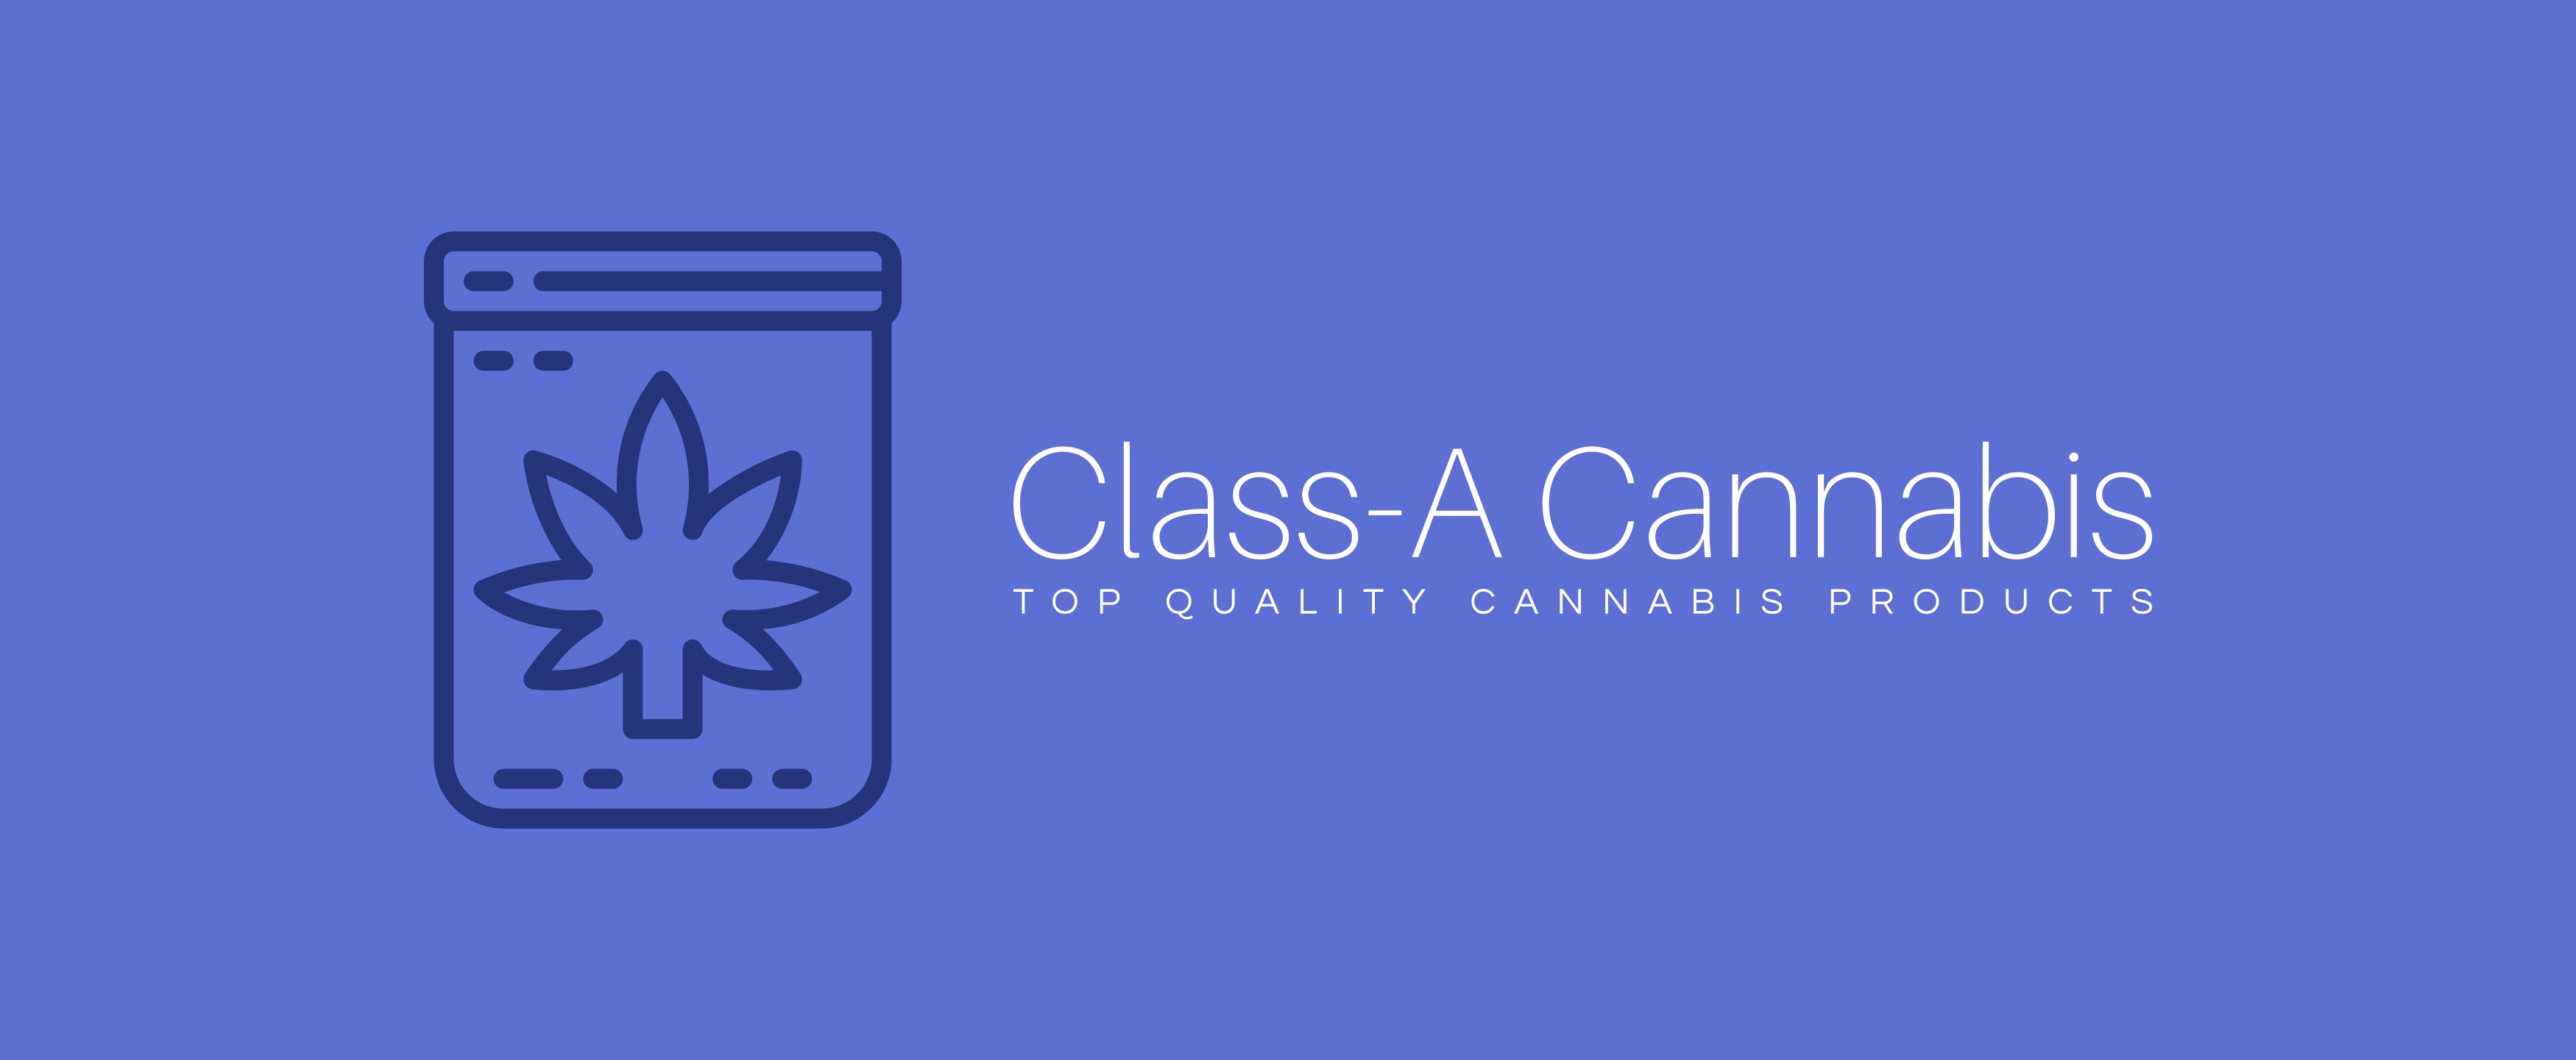 Class-A Cannabis